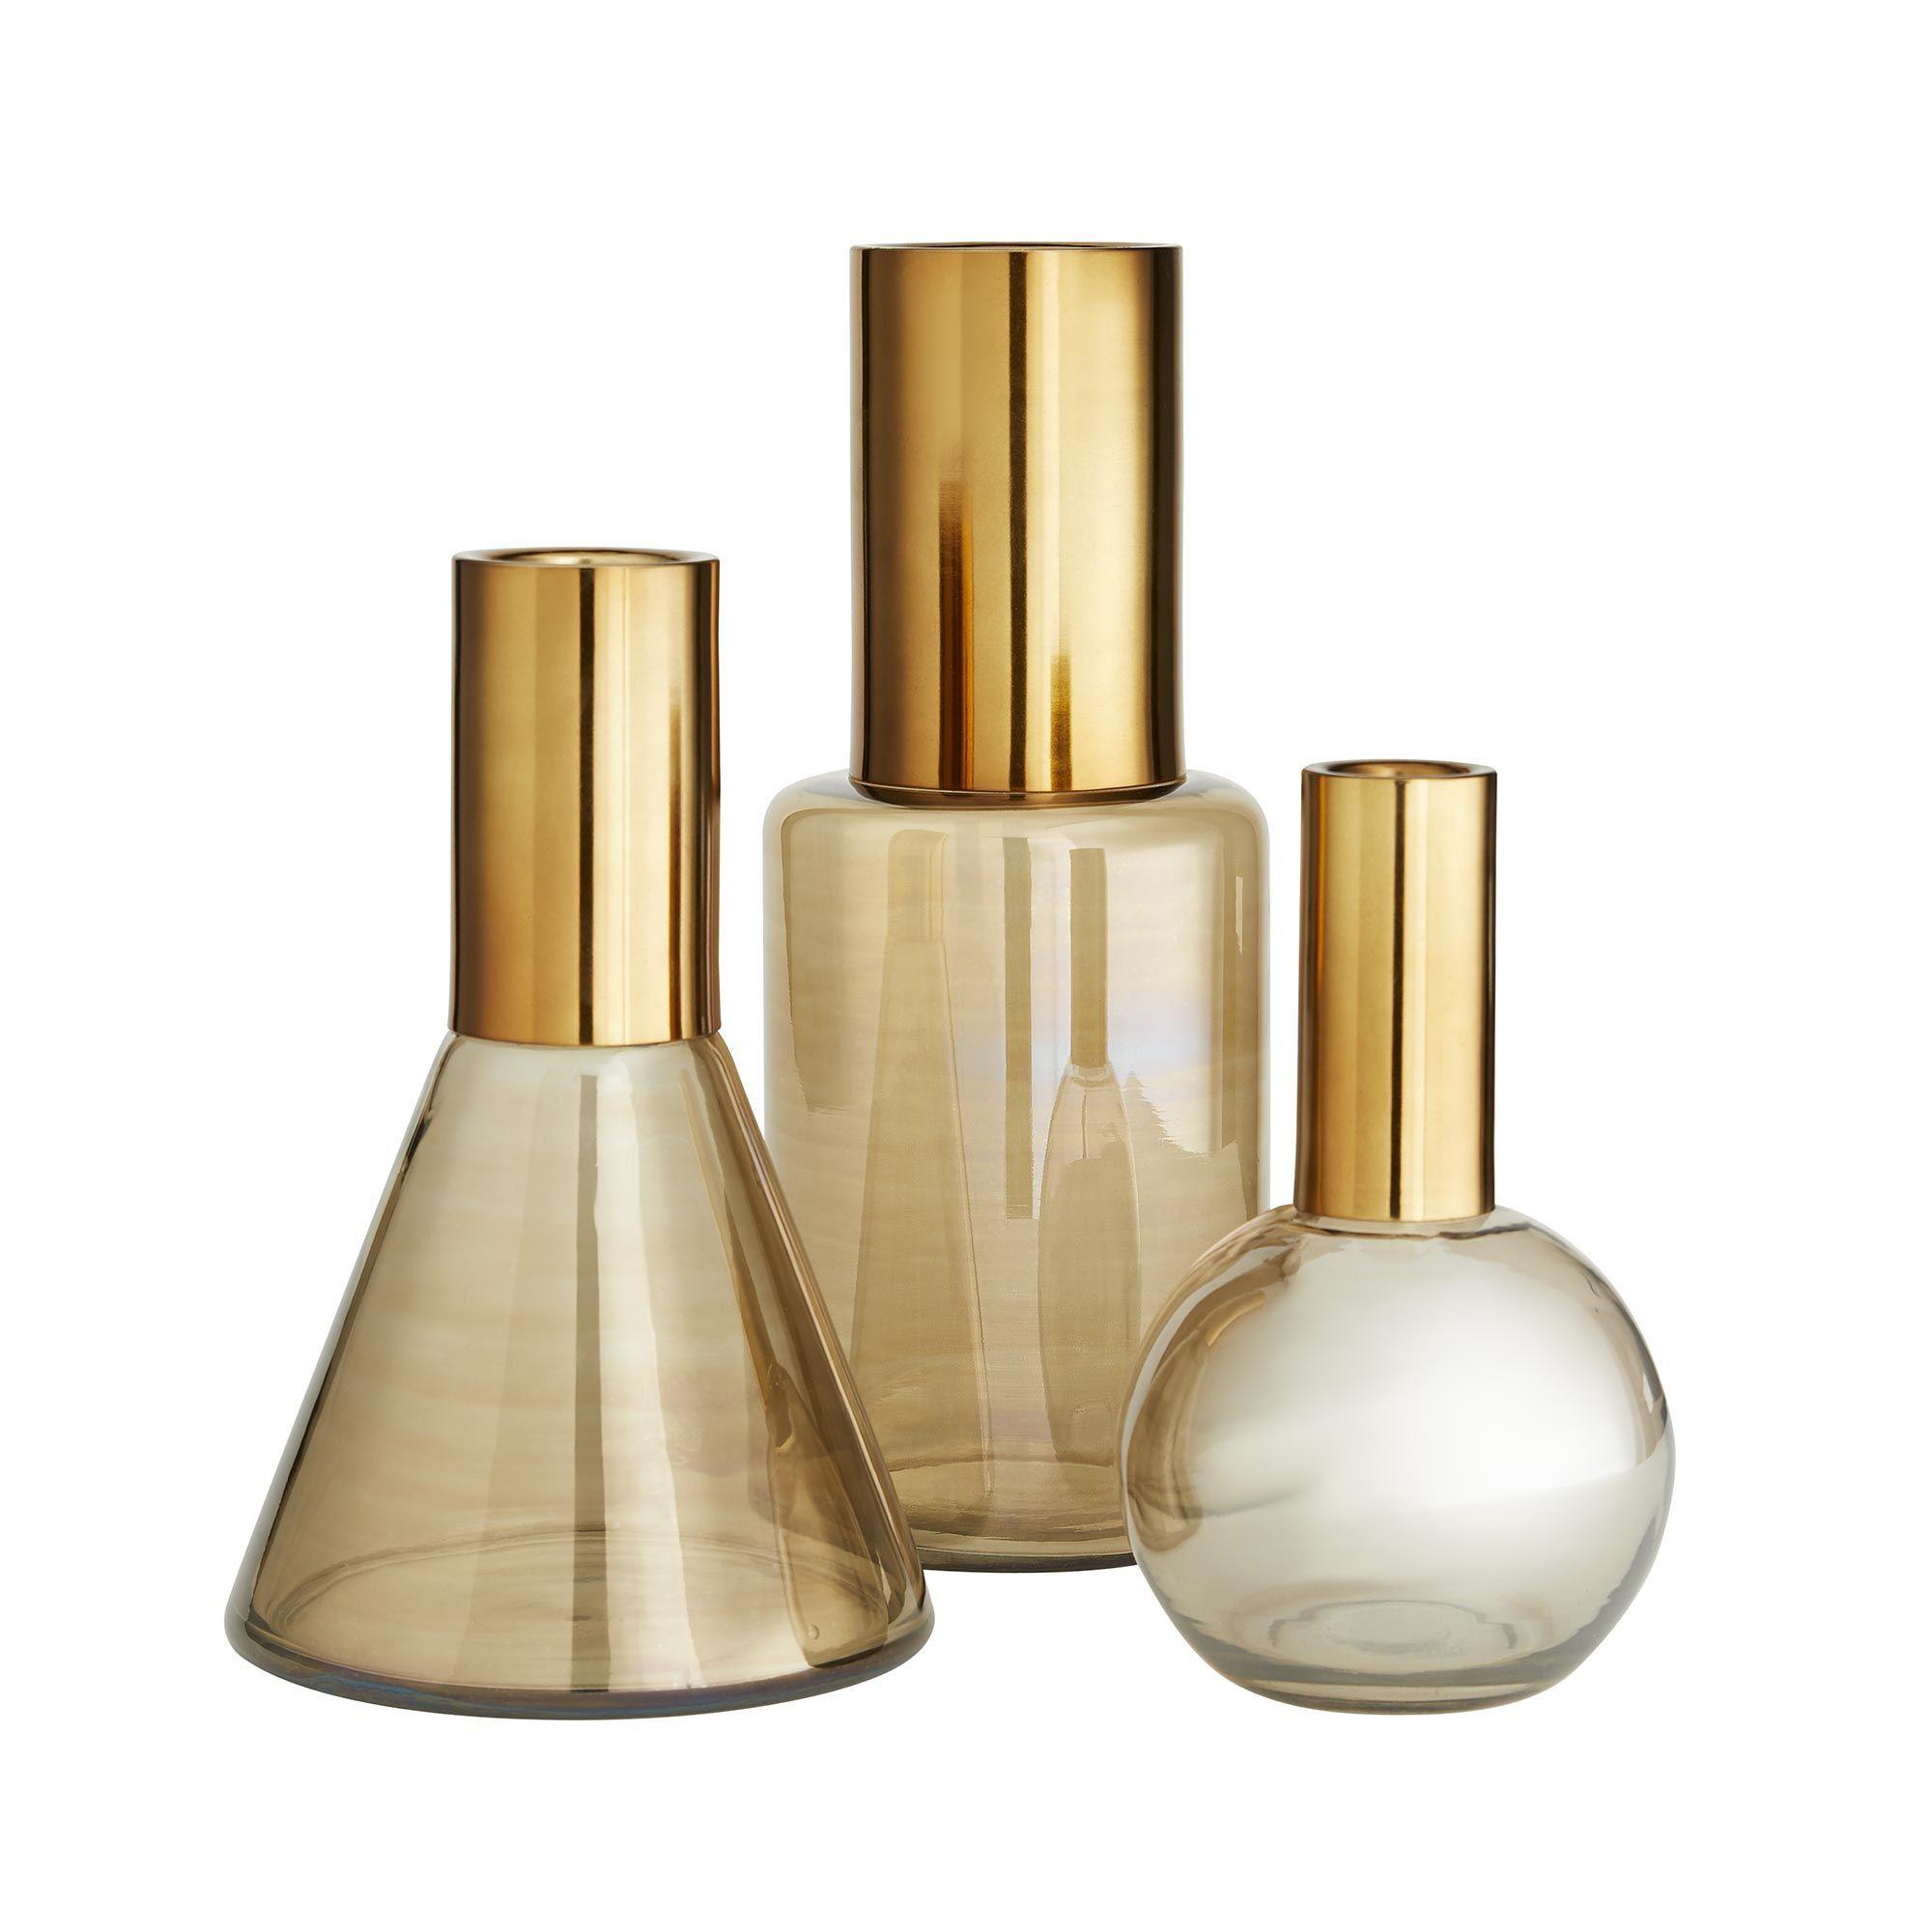 Купить Набор ваз Union Vases, Set of 3 в интернет-магазине roooms.ru